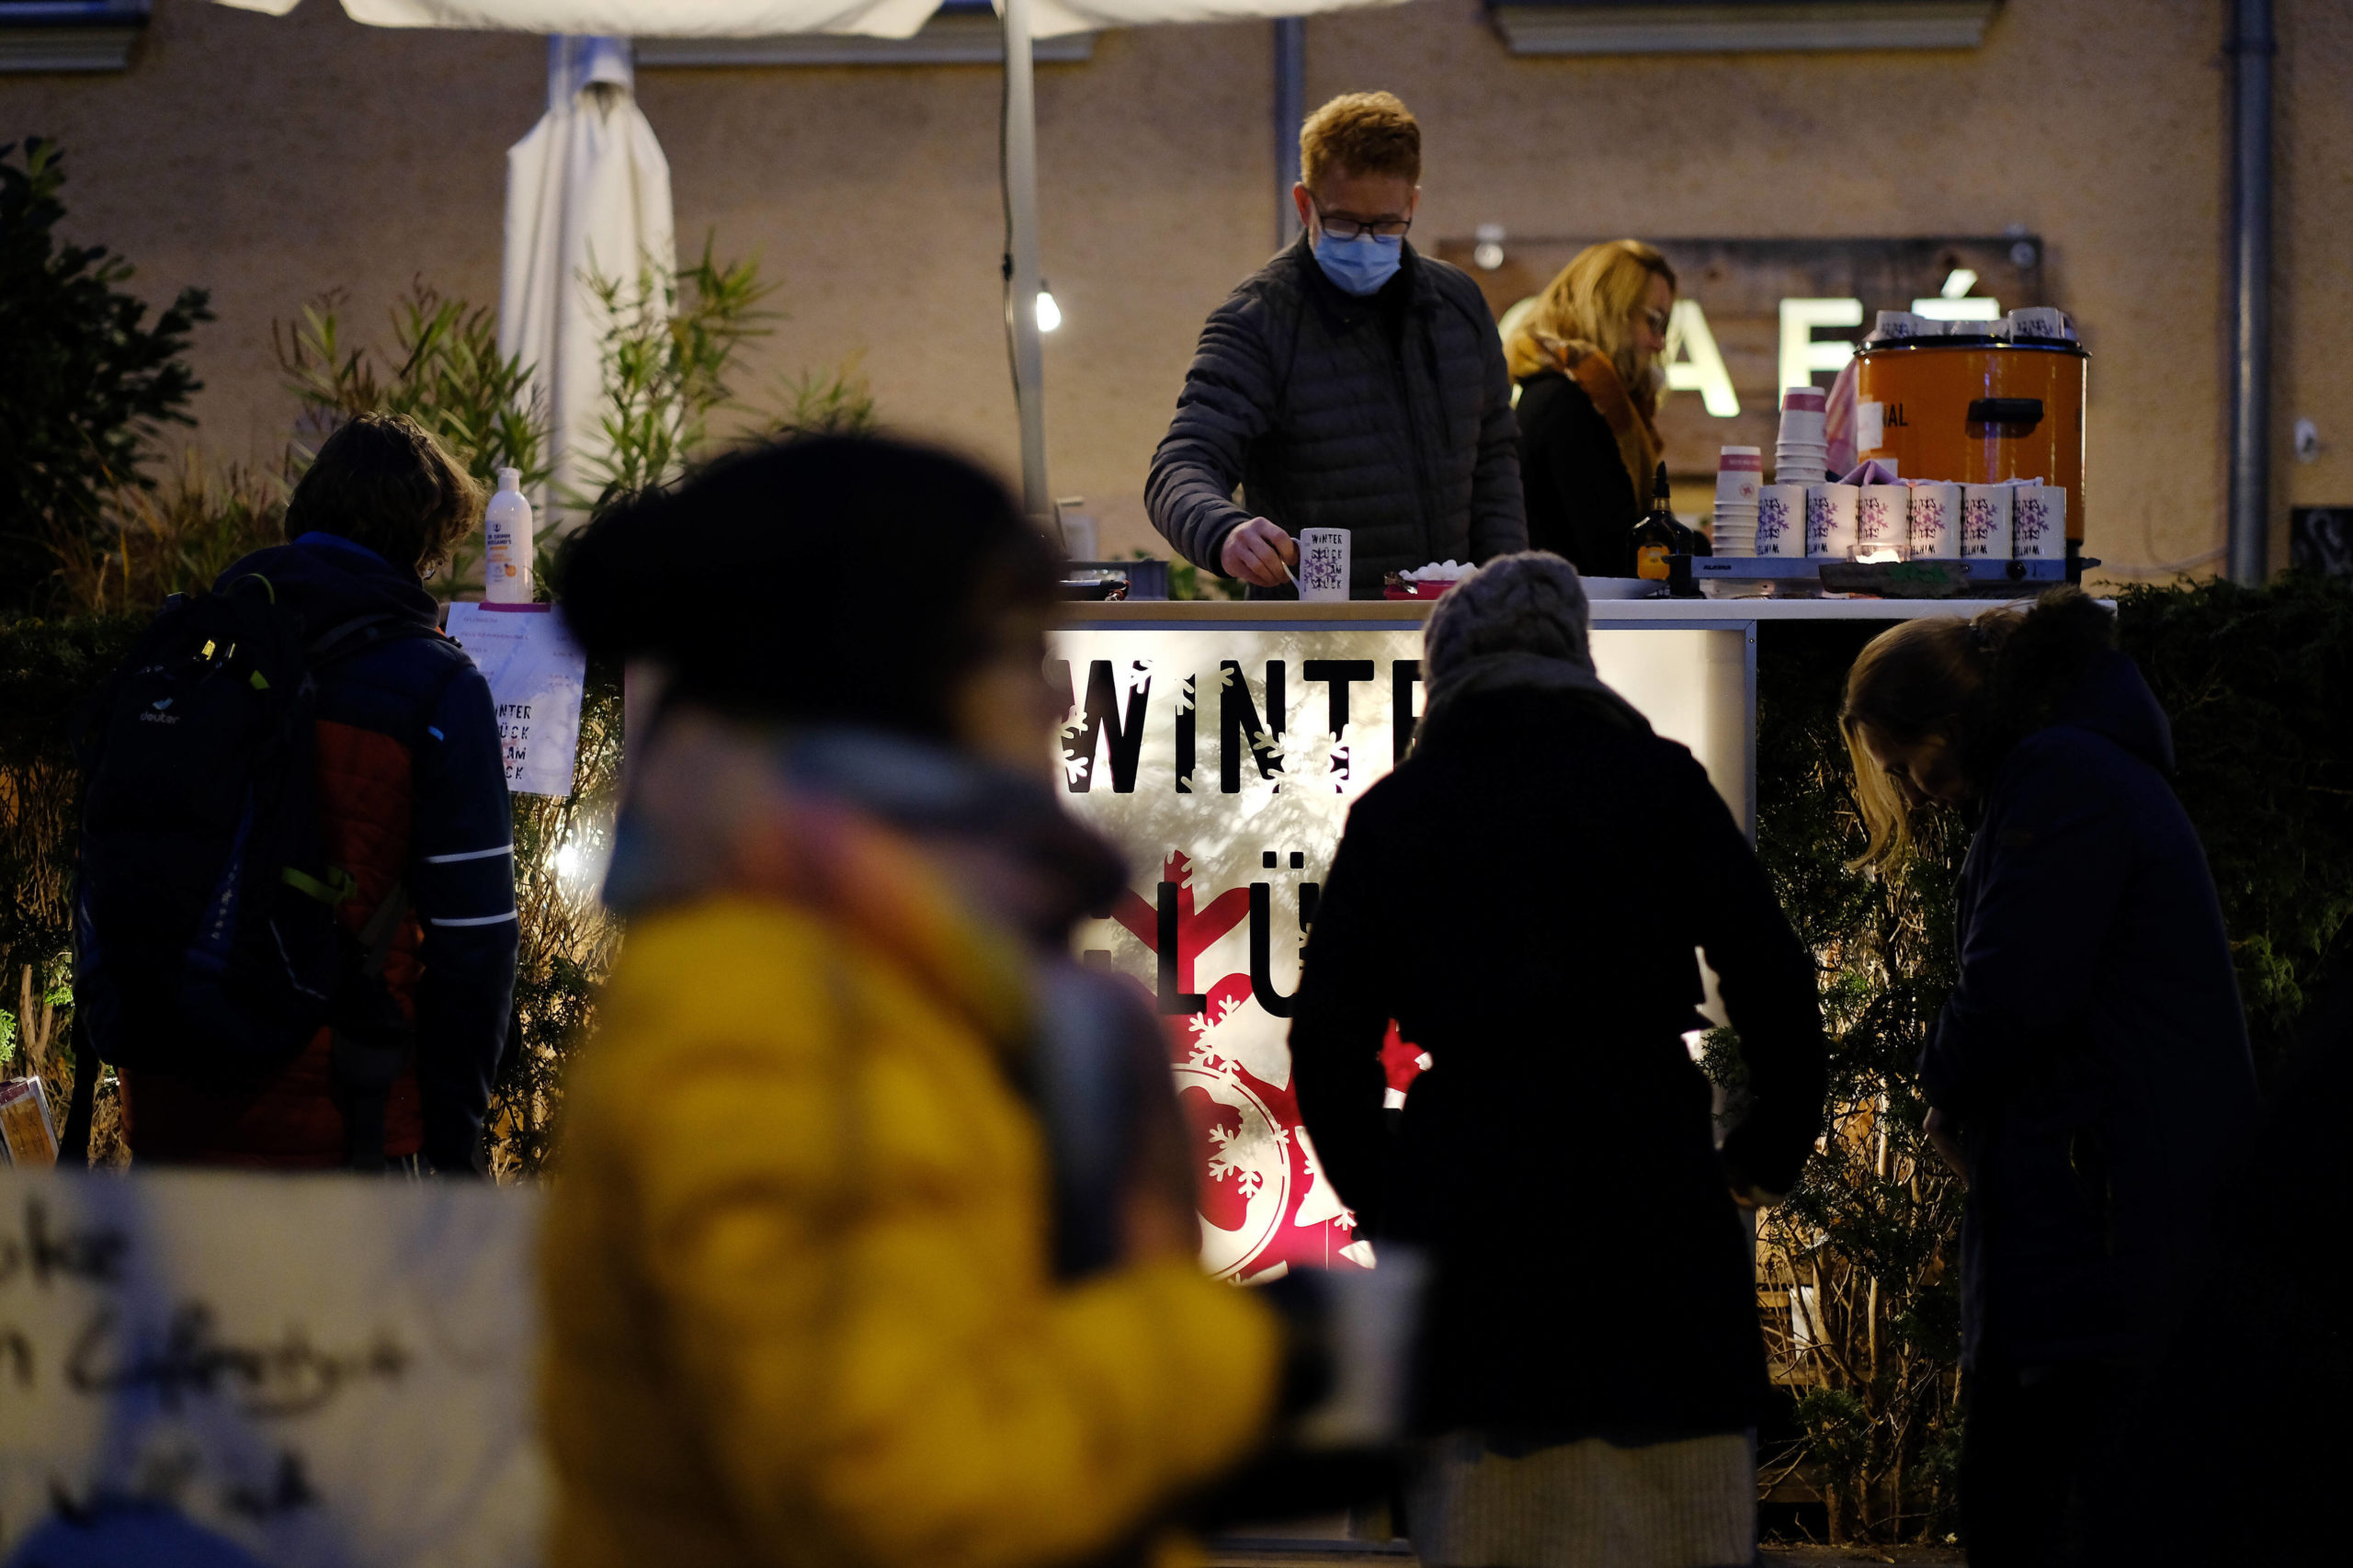 Rausgehen im Winter in Berlin: Im vergangenen Jahr haben Glühwein-Gatherings zu beachtlicher Kältetoleranz geführt. Foto: Imago/Snapshot/K M Krause